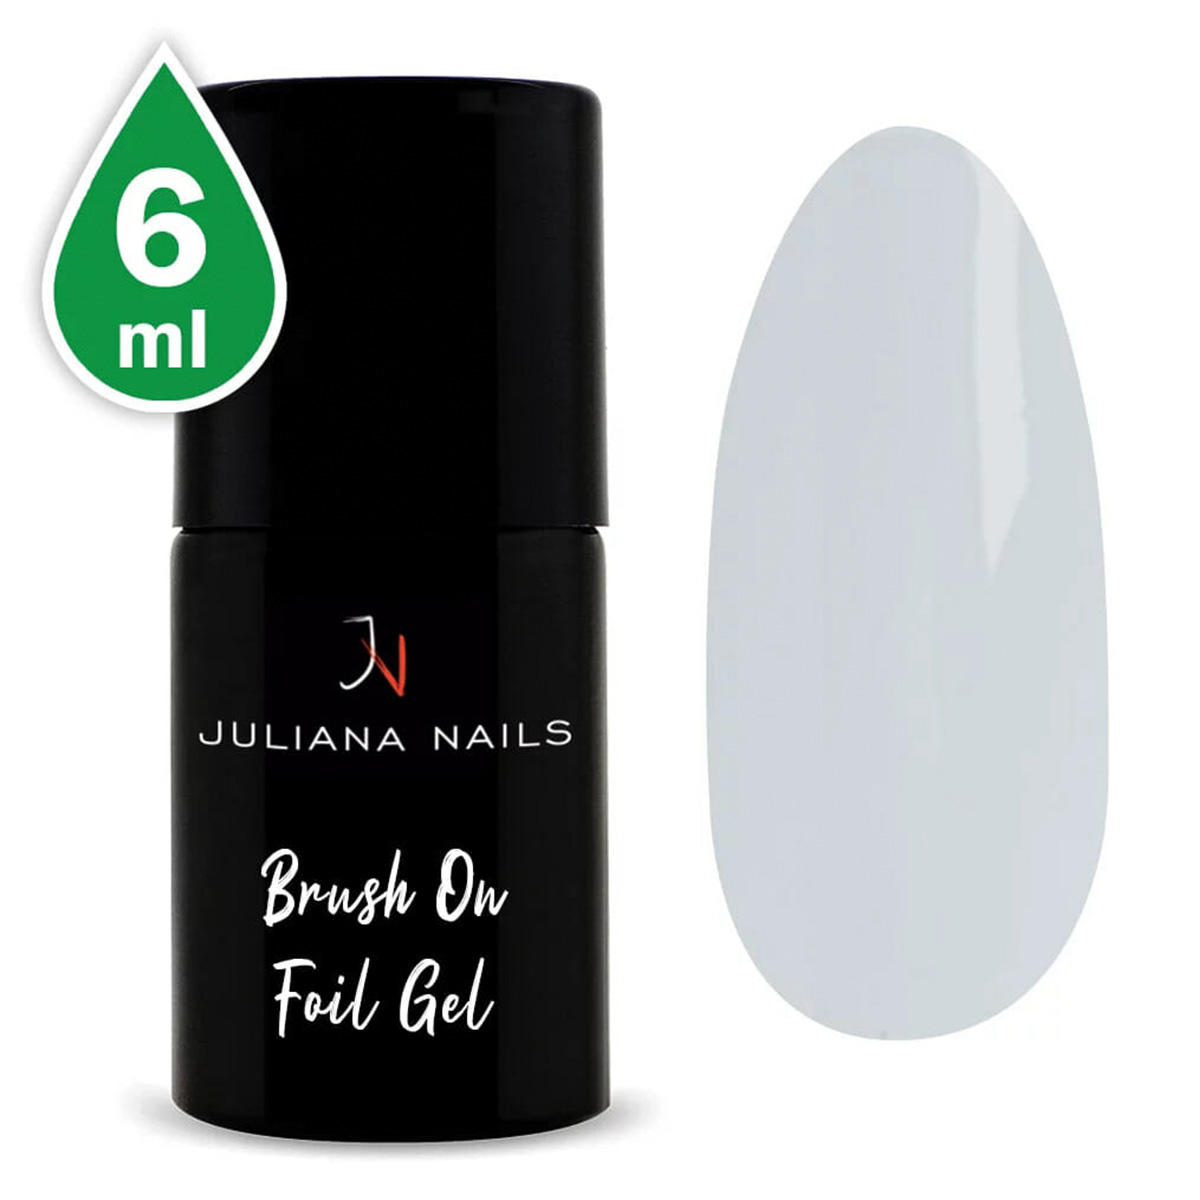 Juliana Nails Brush On Foil Gel 6 ml - 1